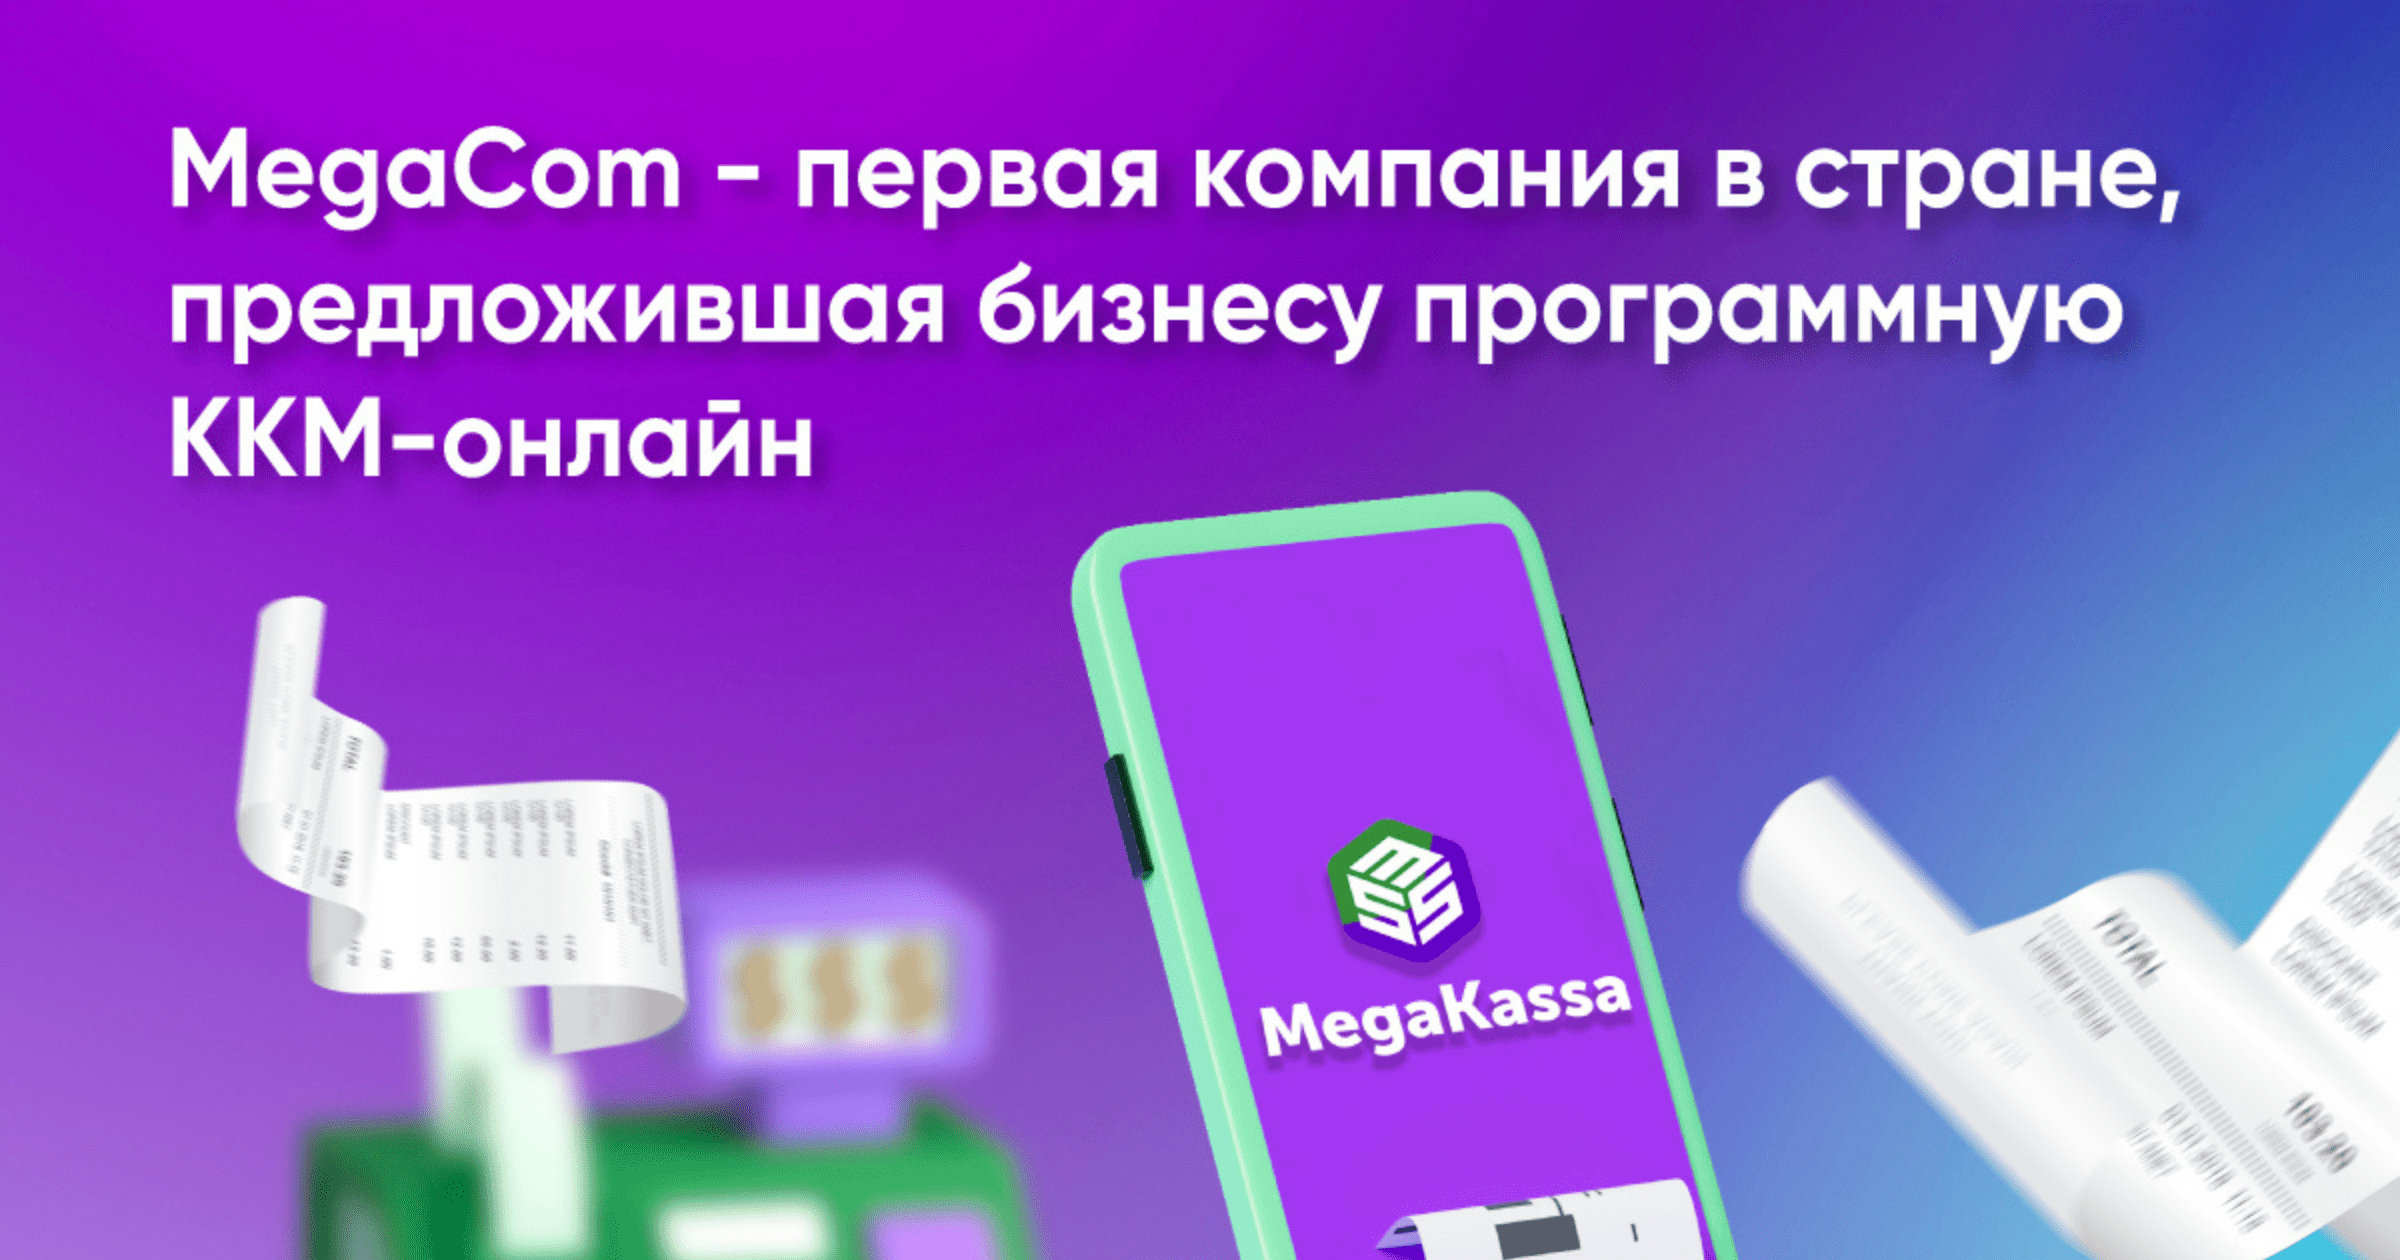 MegaCom – первая в КР компания, предложившая программную ККМ-онлайн для бизнеса